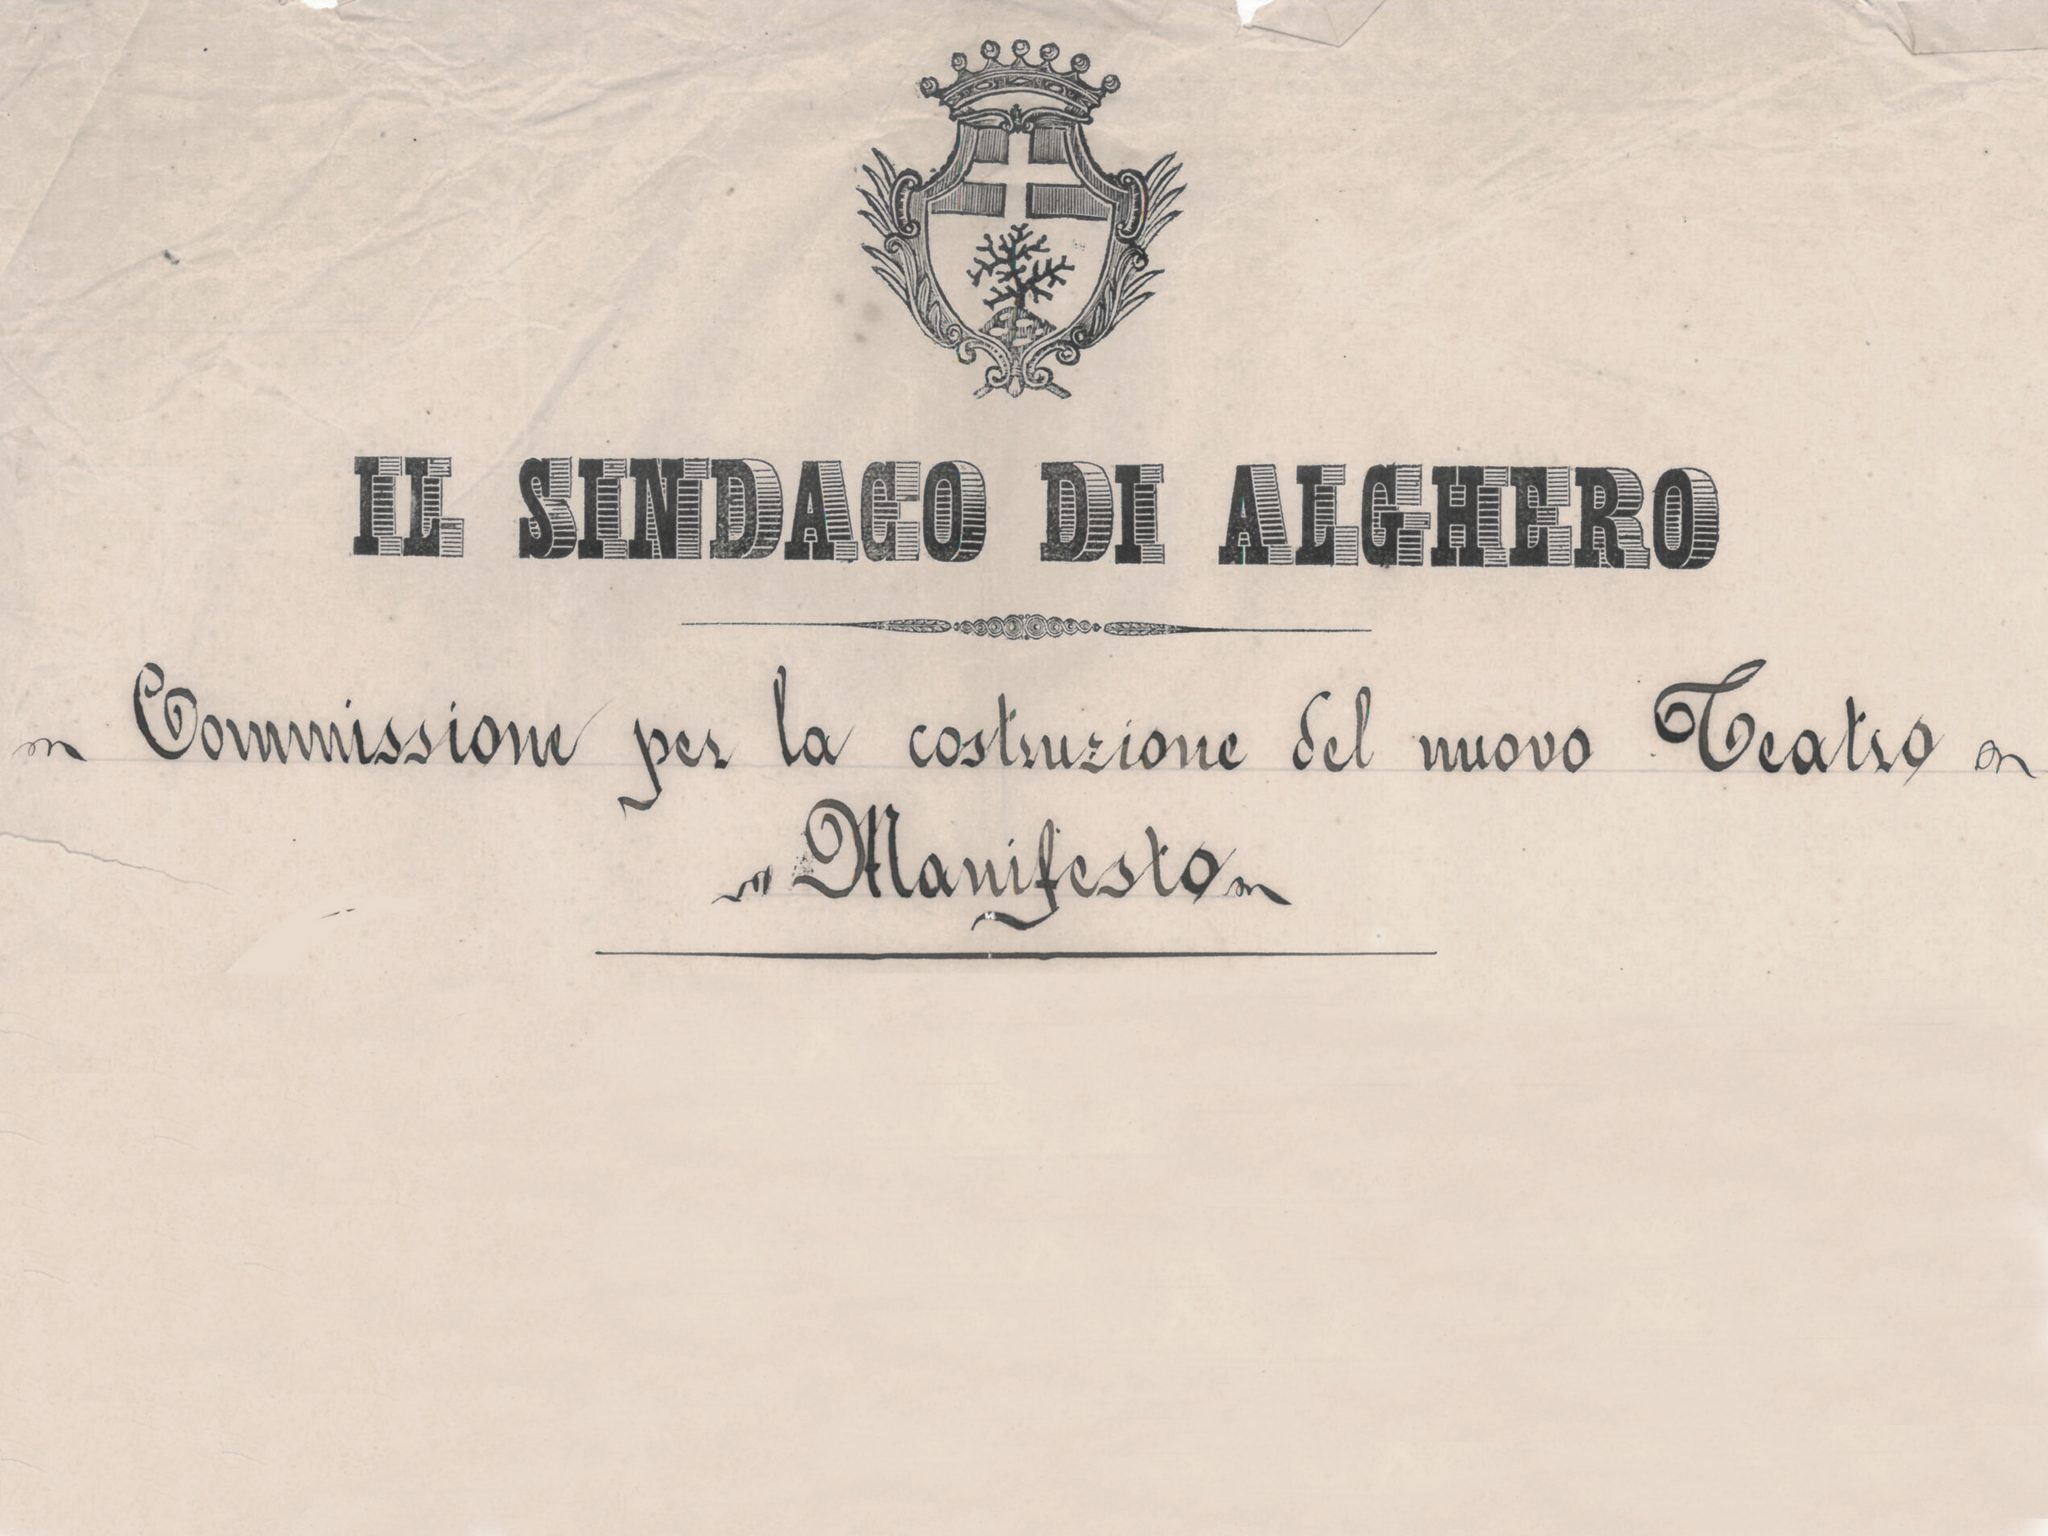 Manifesto per la costruzione del nuovo teatro. Archivio Storico Comunale Alghero.